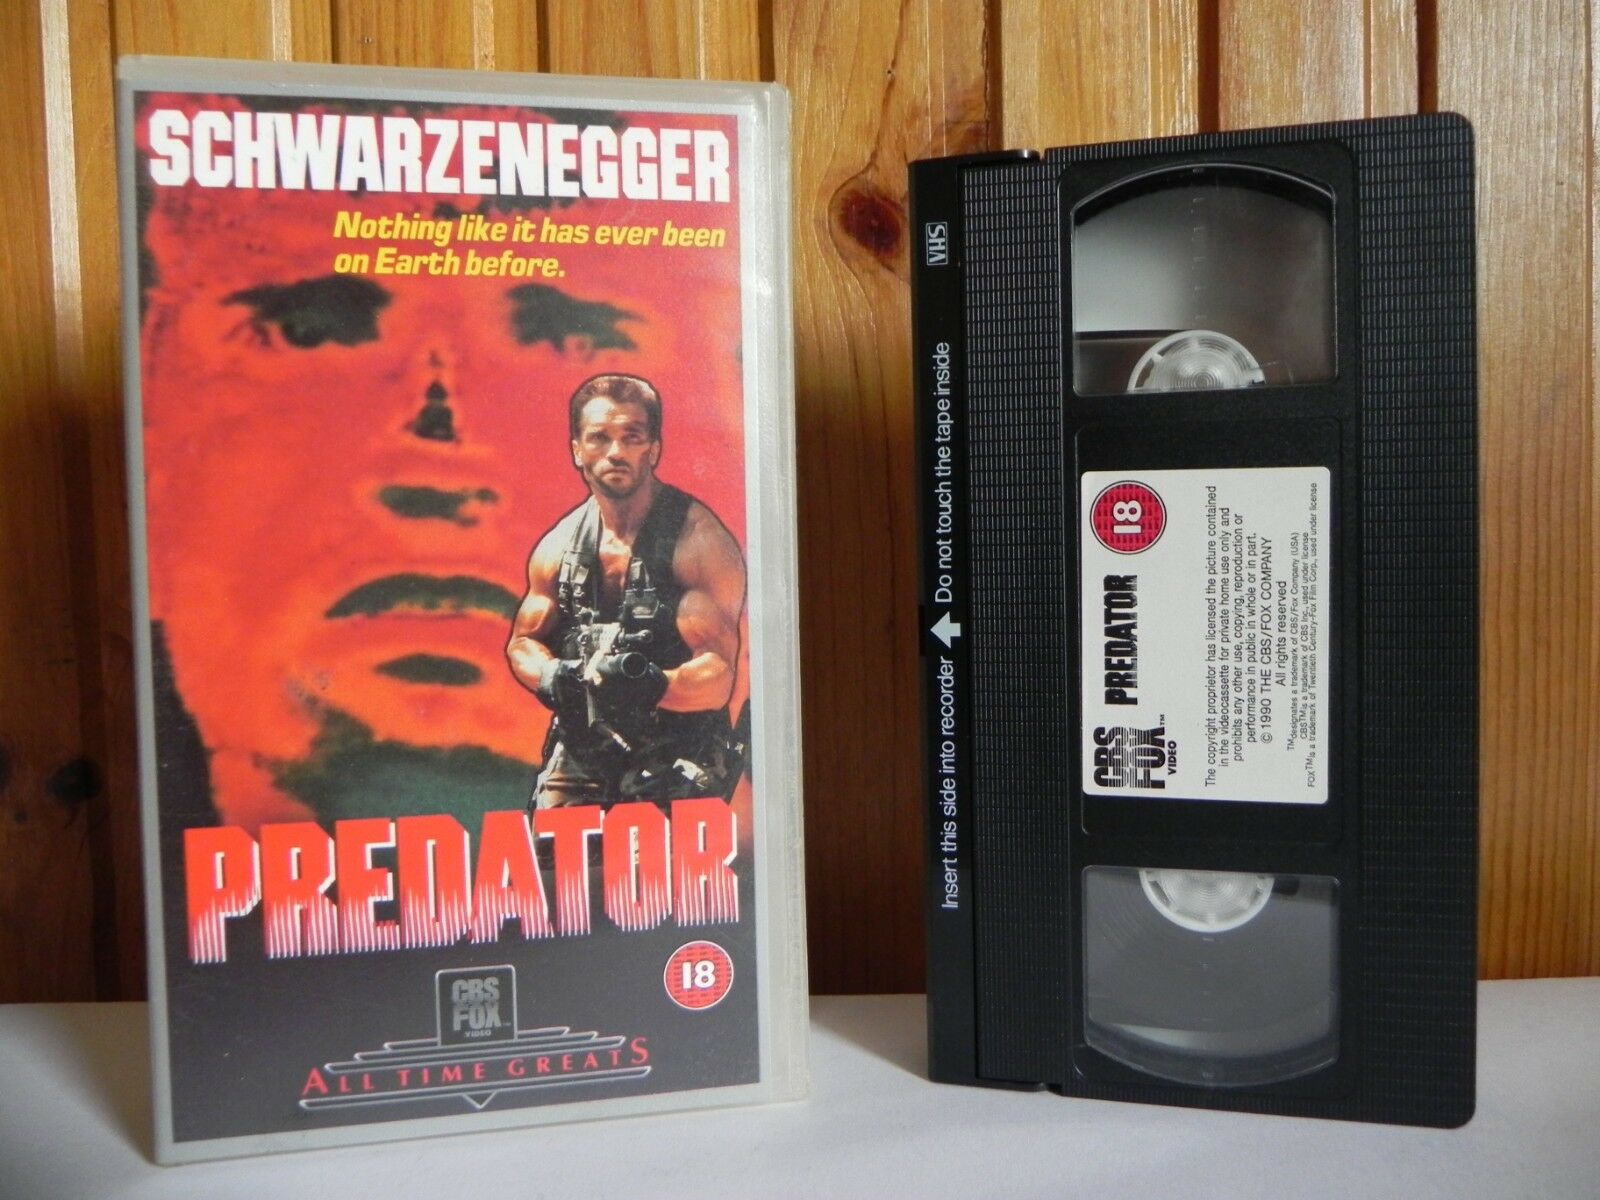 Predator: CBS/FOX - Schwarzenegger (Alien Face-Off) Vietnam Bloodshed - Pal VHS-